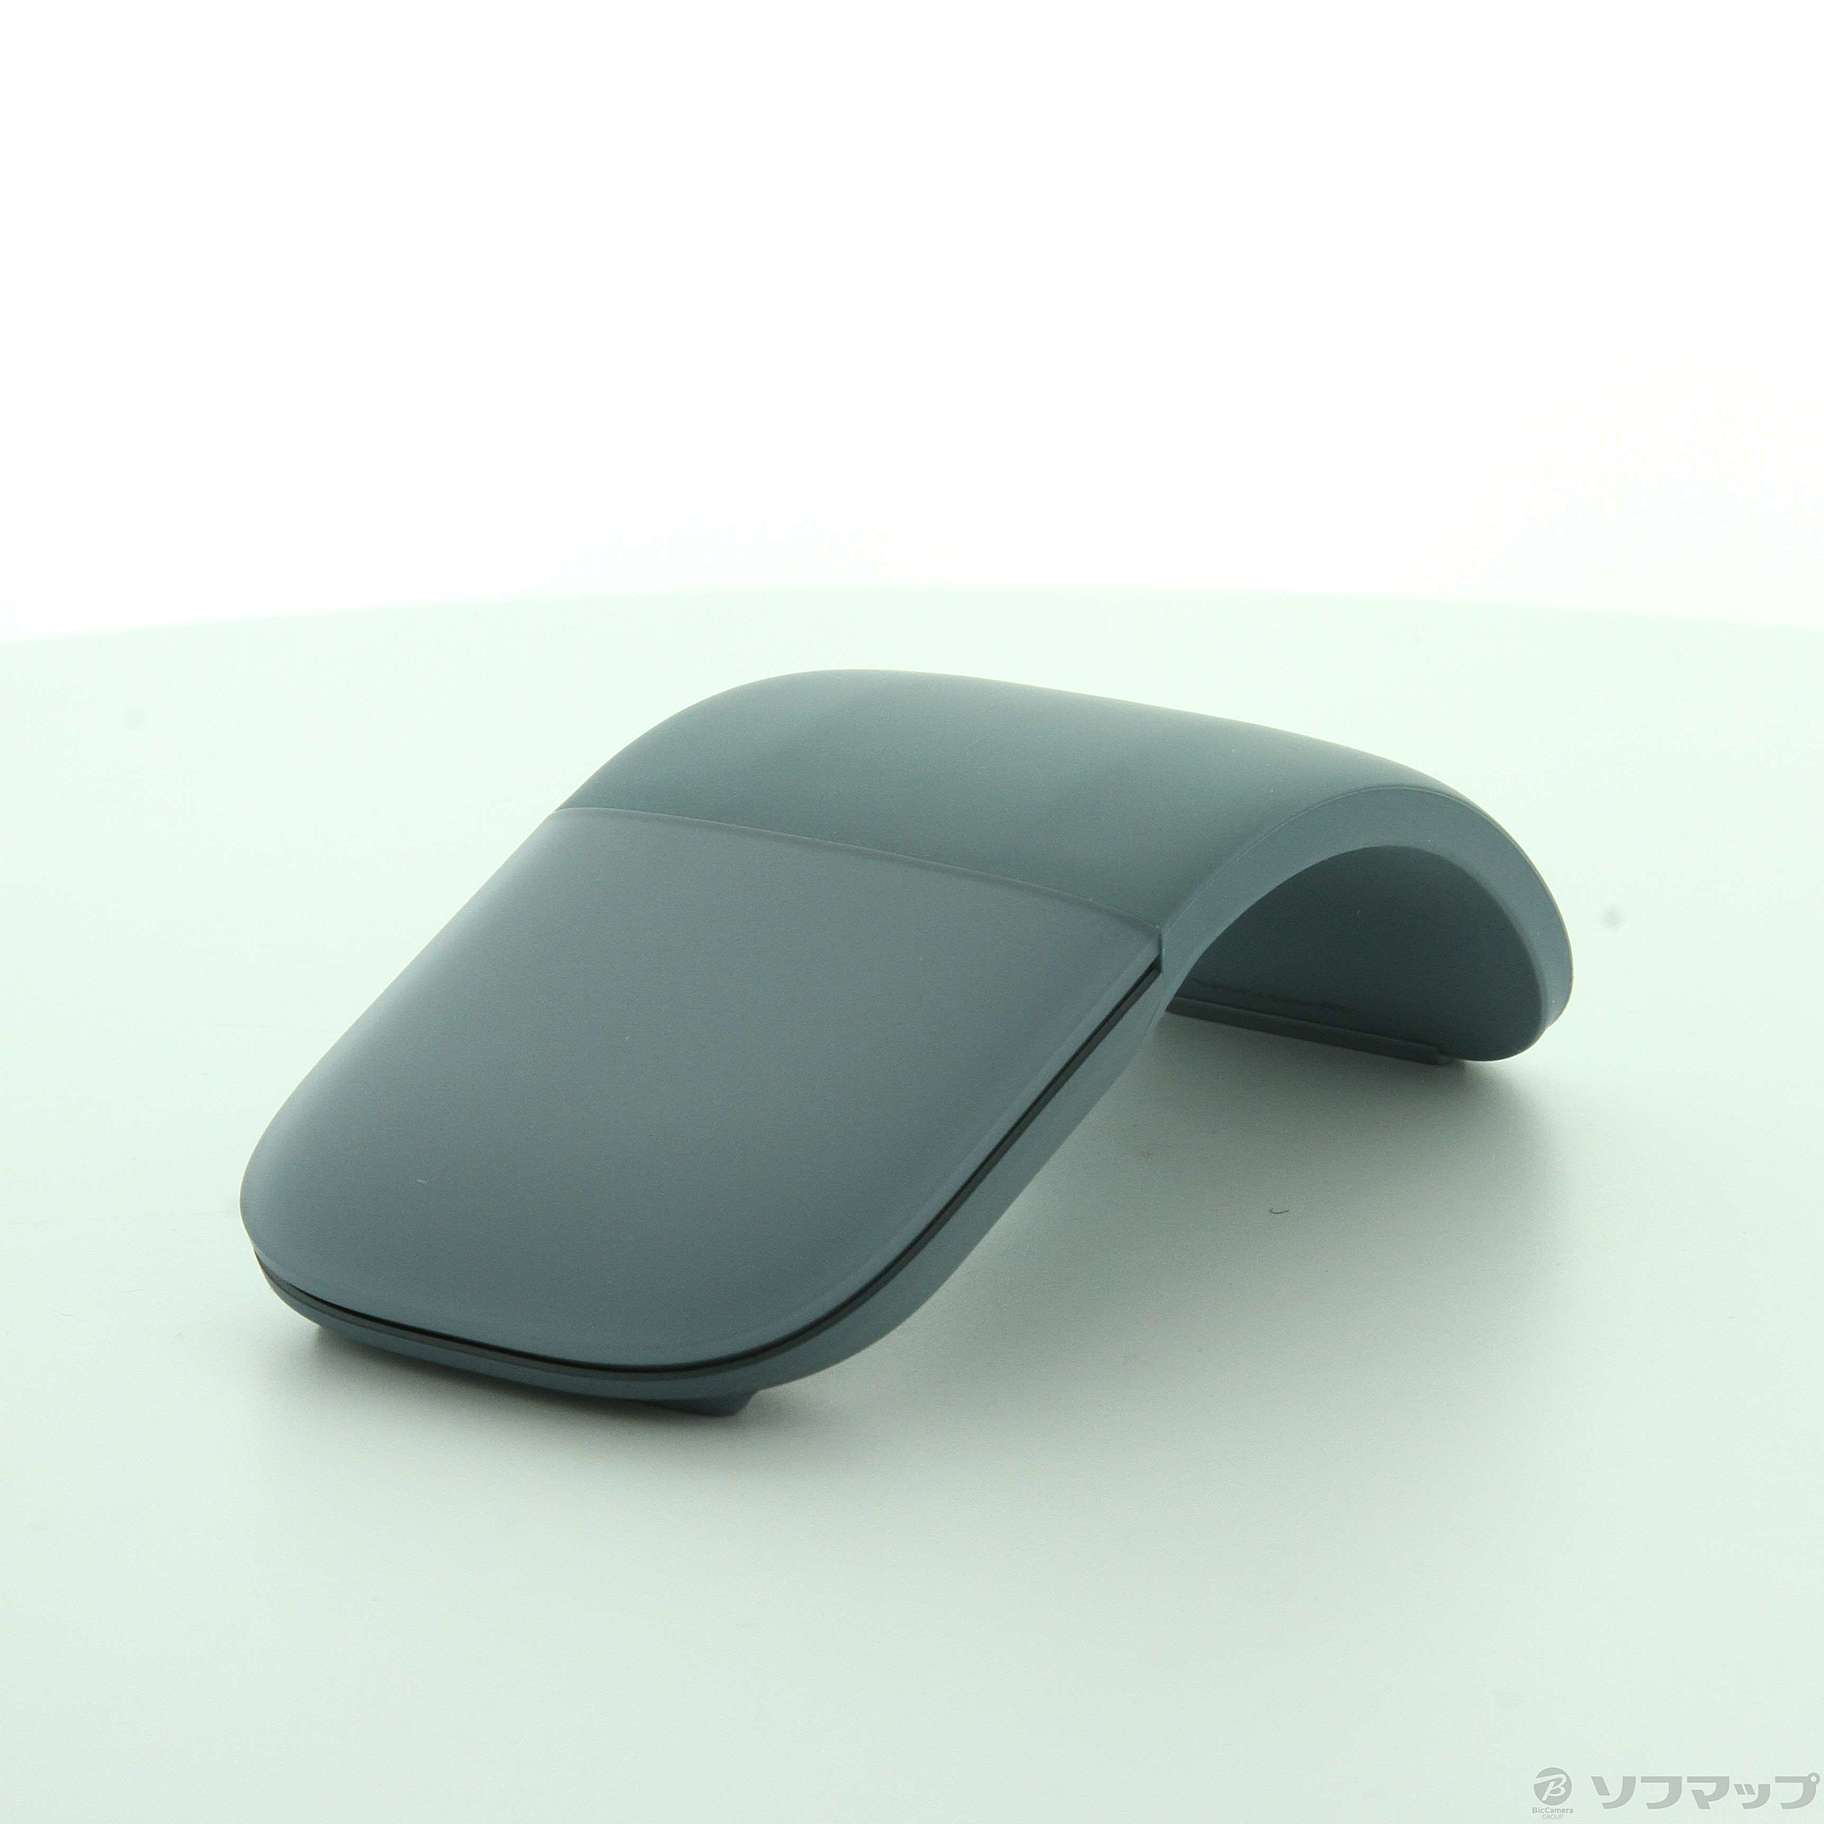 〔展示品〕 Surface Arc Mouse CZV-00071 アイスブルー